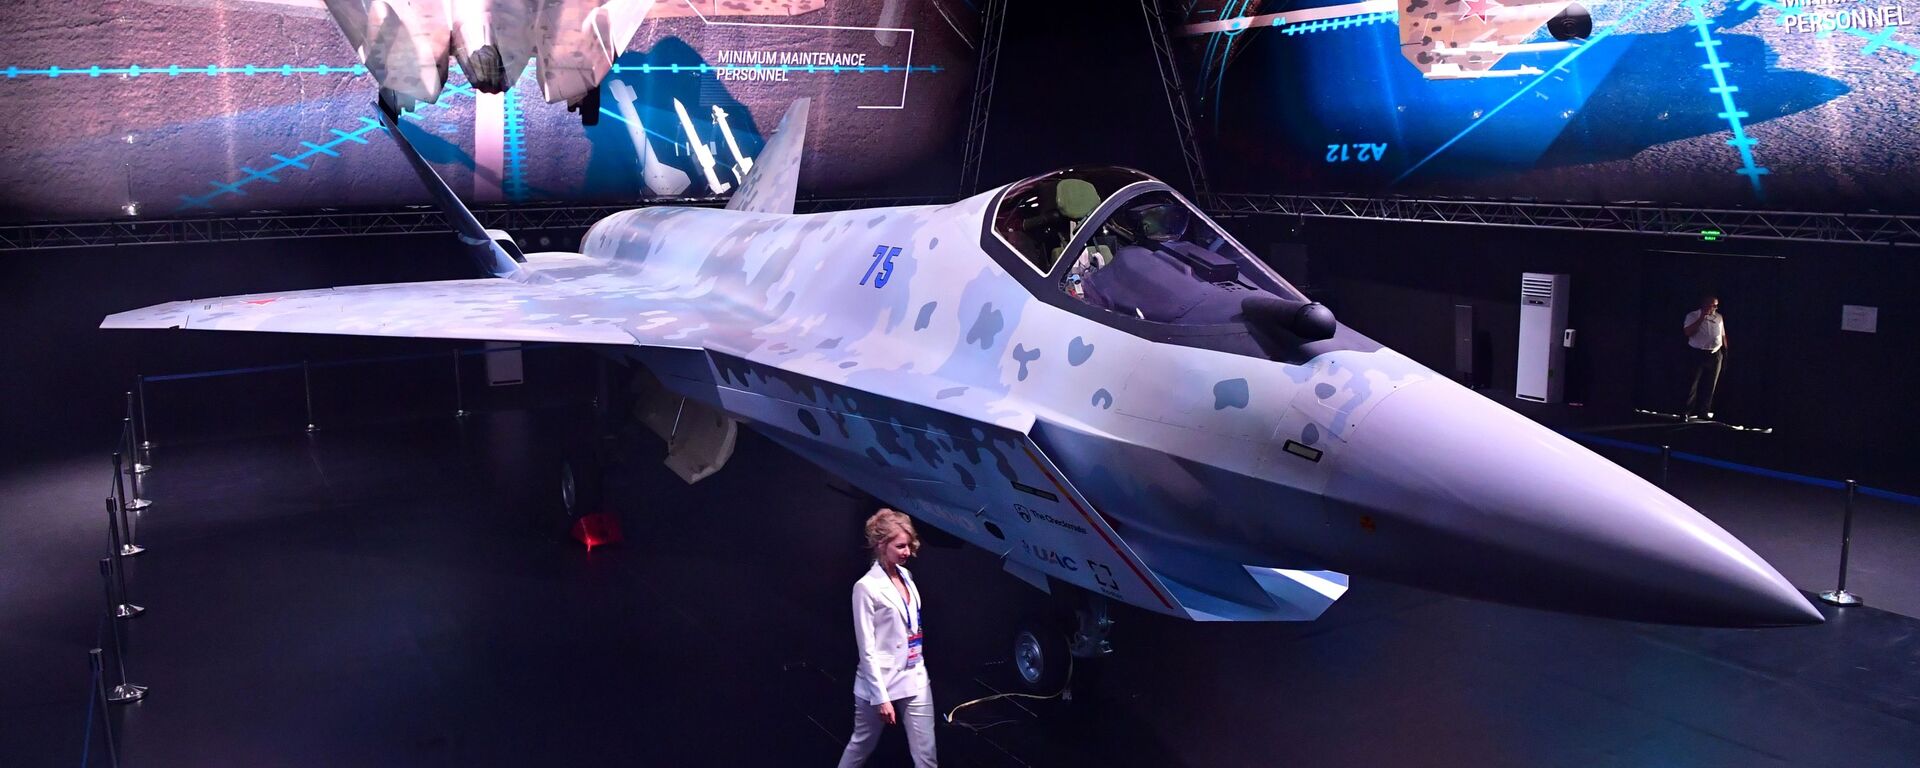 مقاتلة سوخوي تشيك ميت (كش ملك) في معرض الطيران والفضاء الدولي ماكس 2021 في جوكوفسكي، ضواحي موسكو، روسيا 20 يوليو 2021 - سبوتنيك عربي, 1920, 15.11.2021